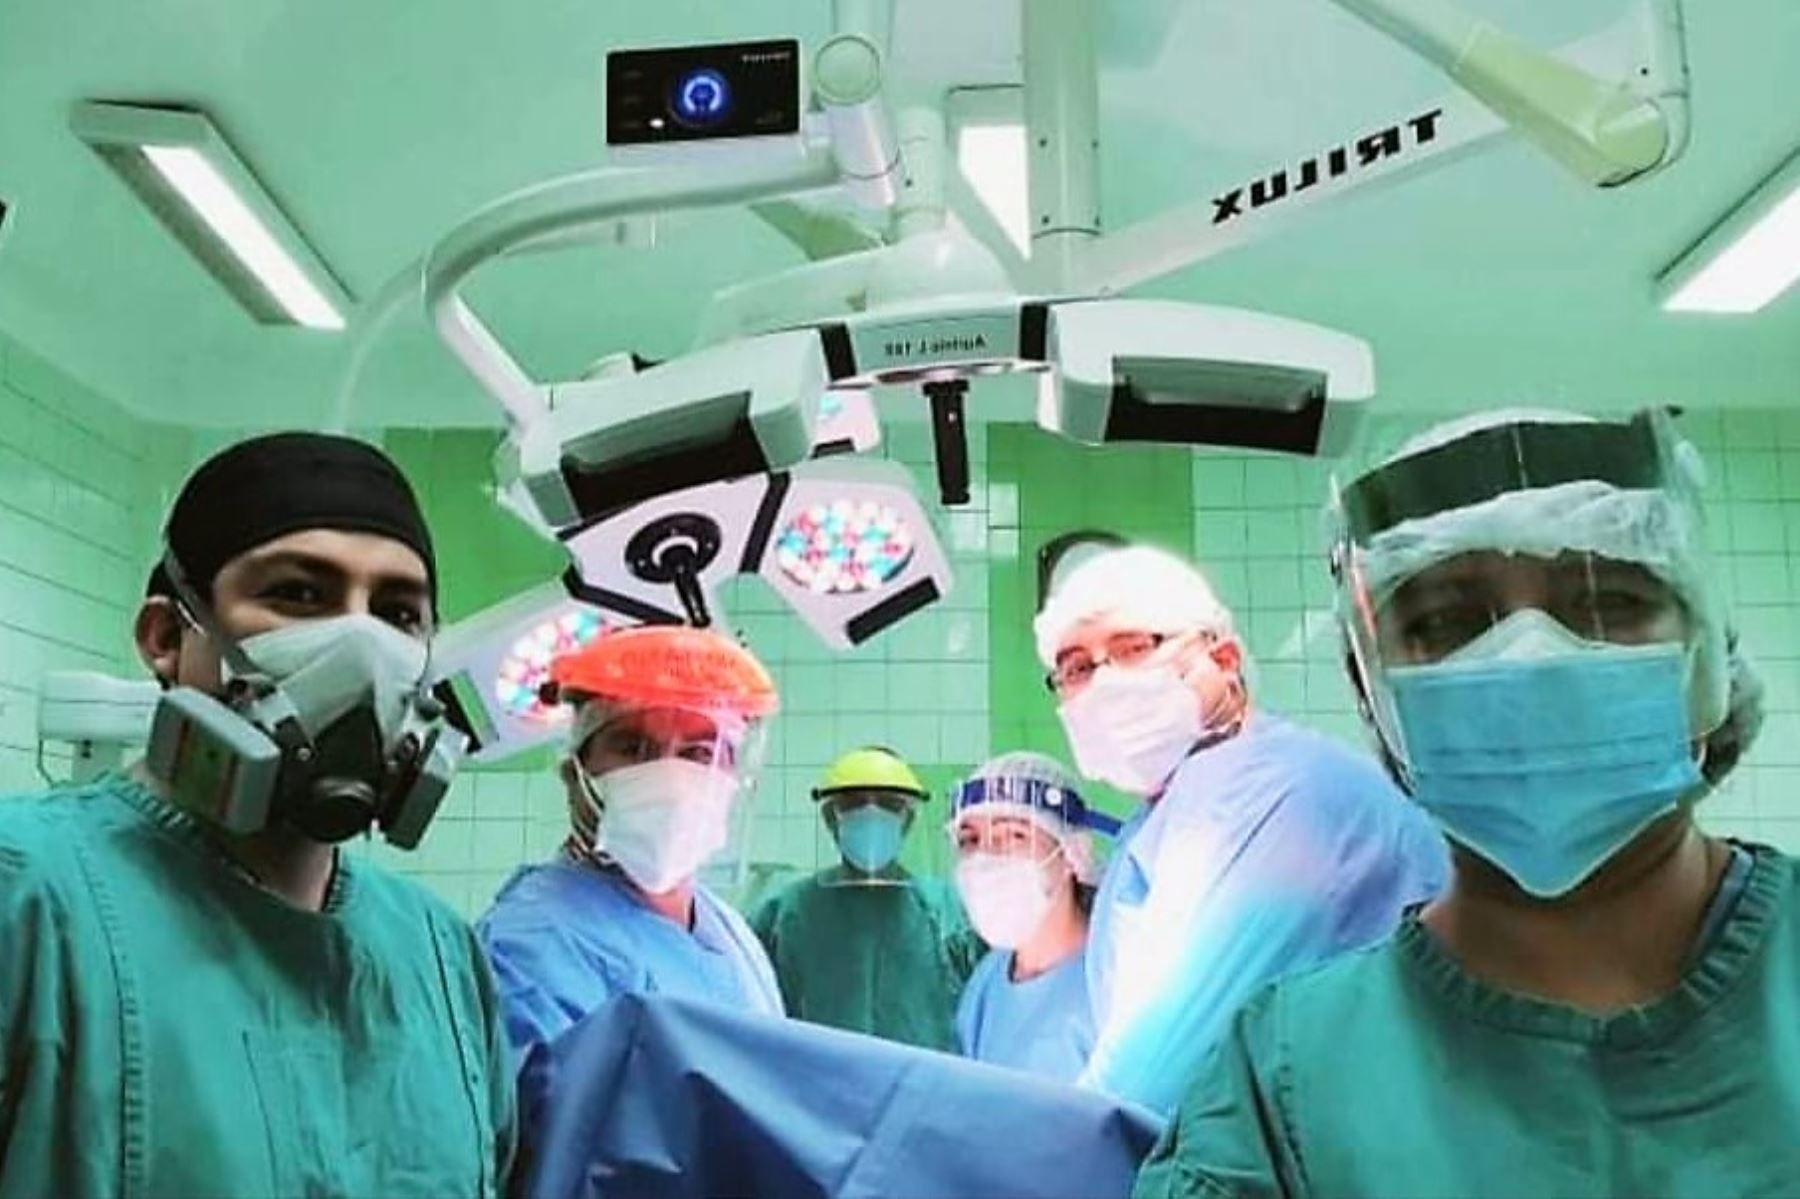 Profesionales de la salud reanudan cirugías en el hospital Belén de Lambayeque tras seis meses de suspensión por la pandemia del covid-19.